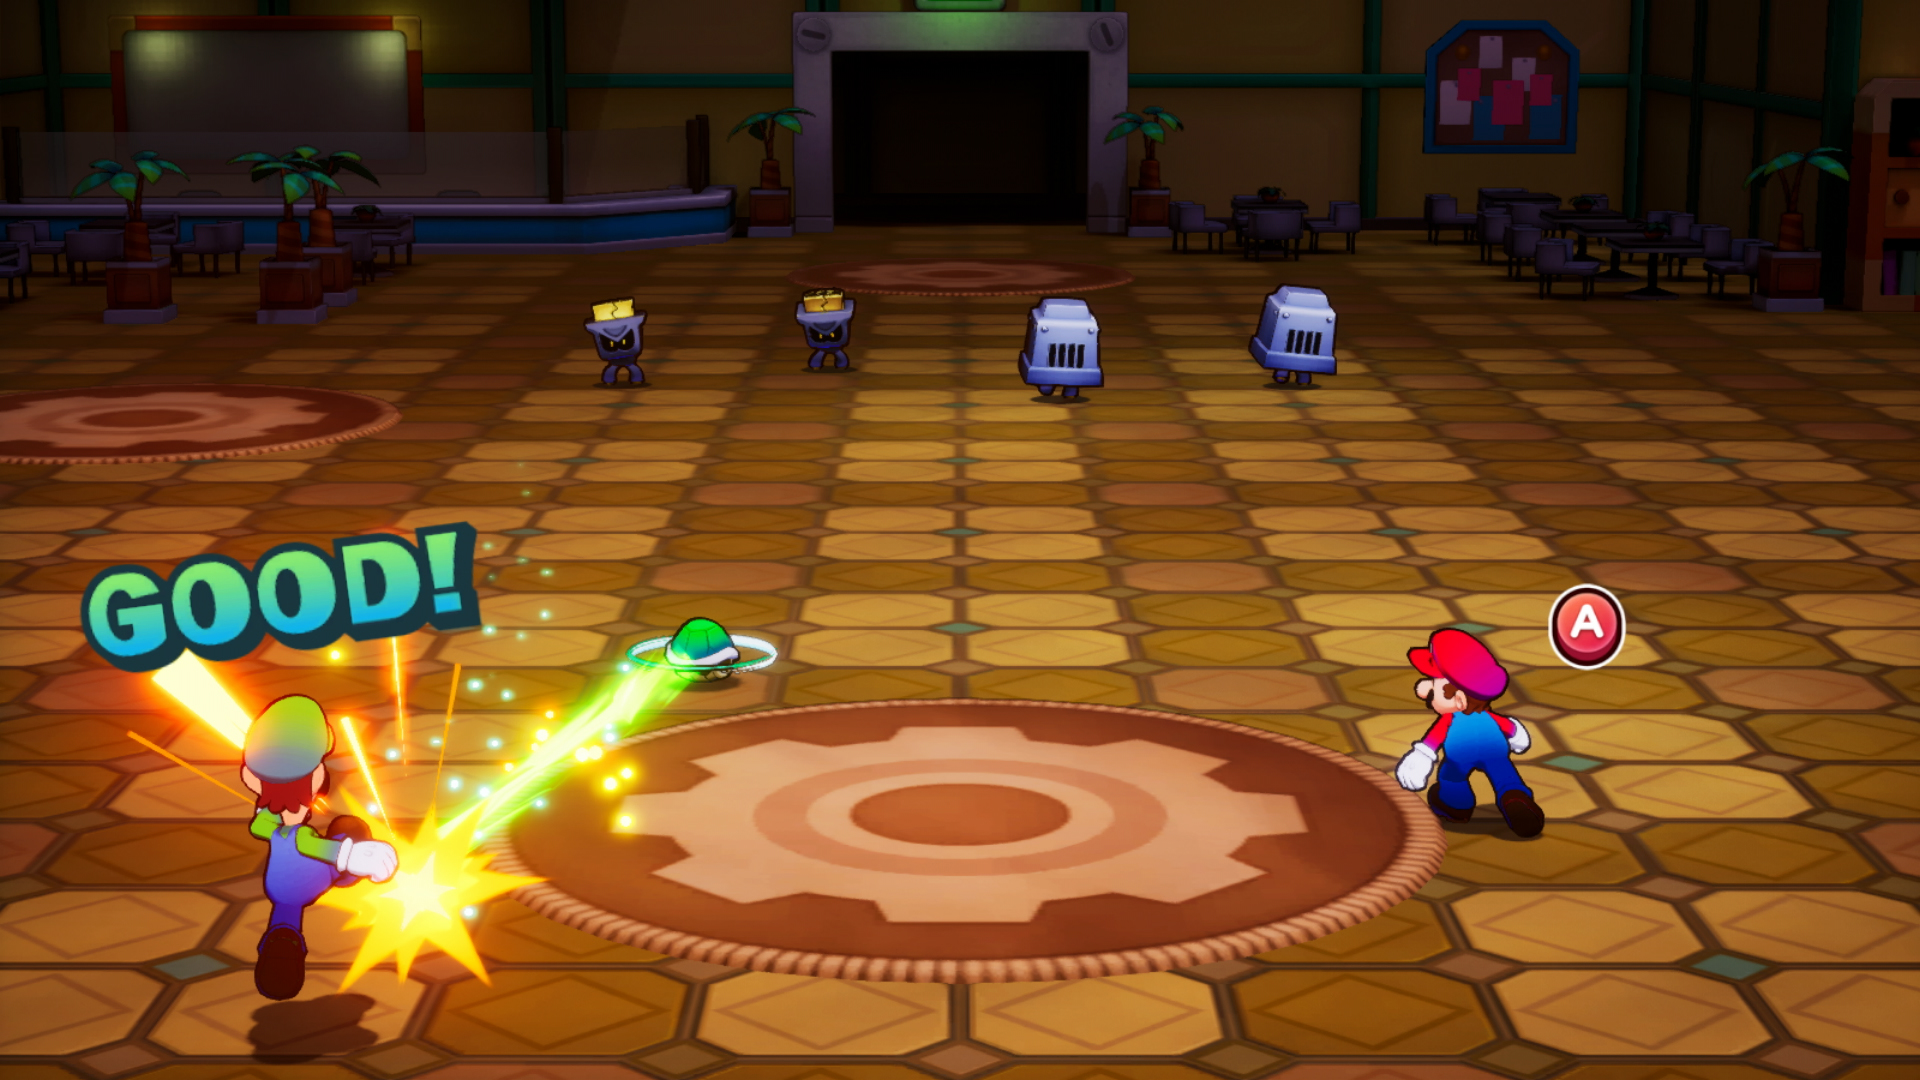 Mario et luigi l epopee fraternelle screenshot 24 22